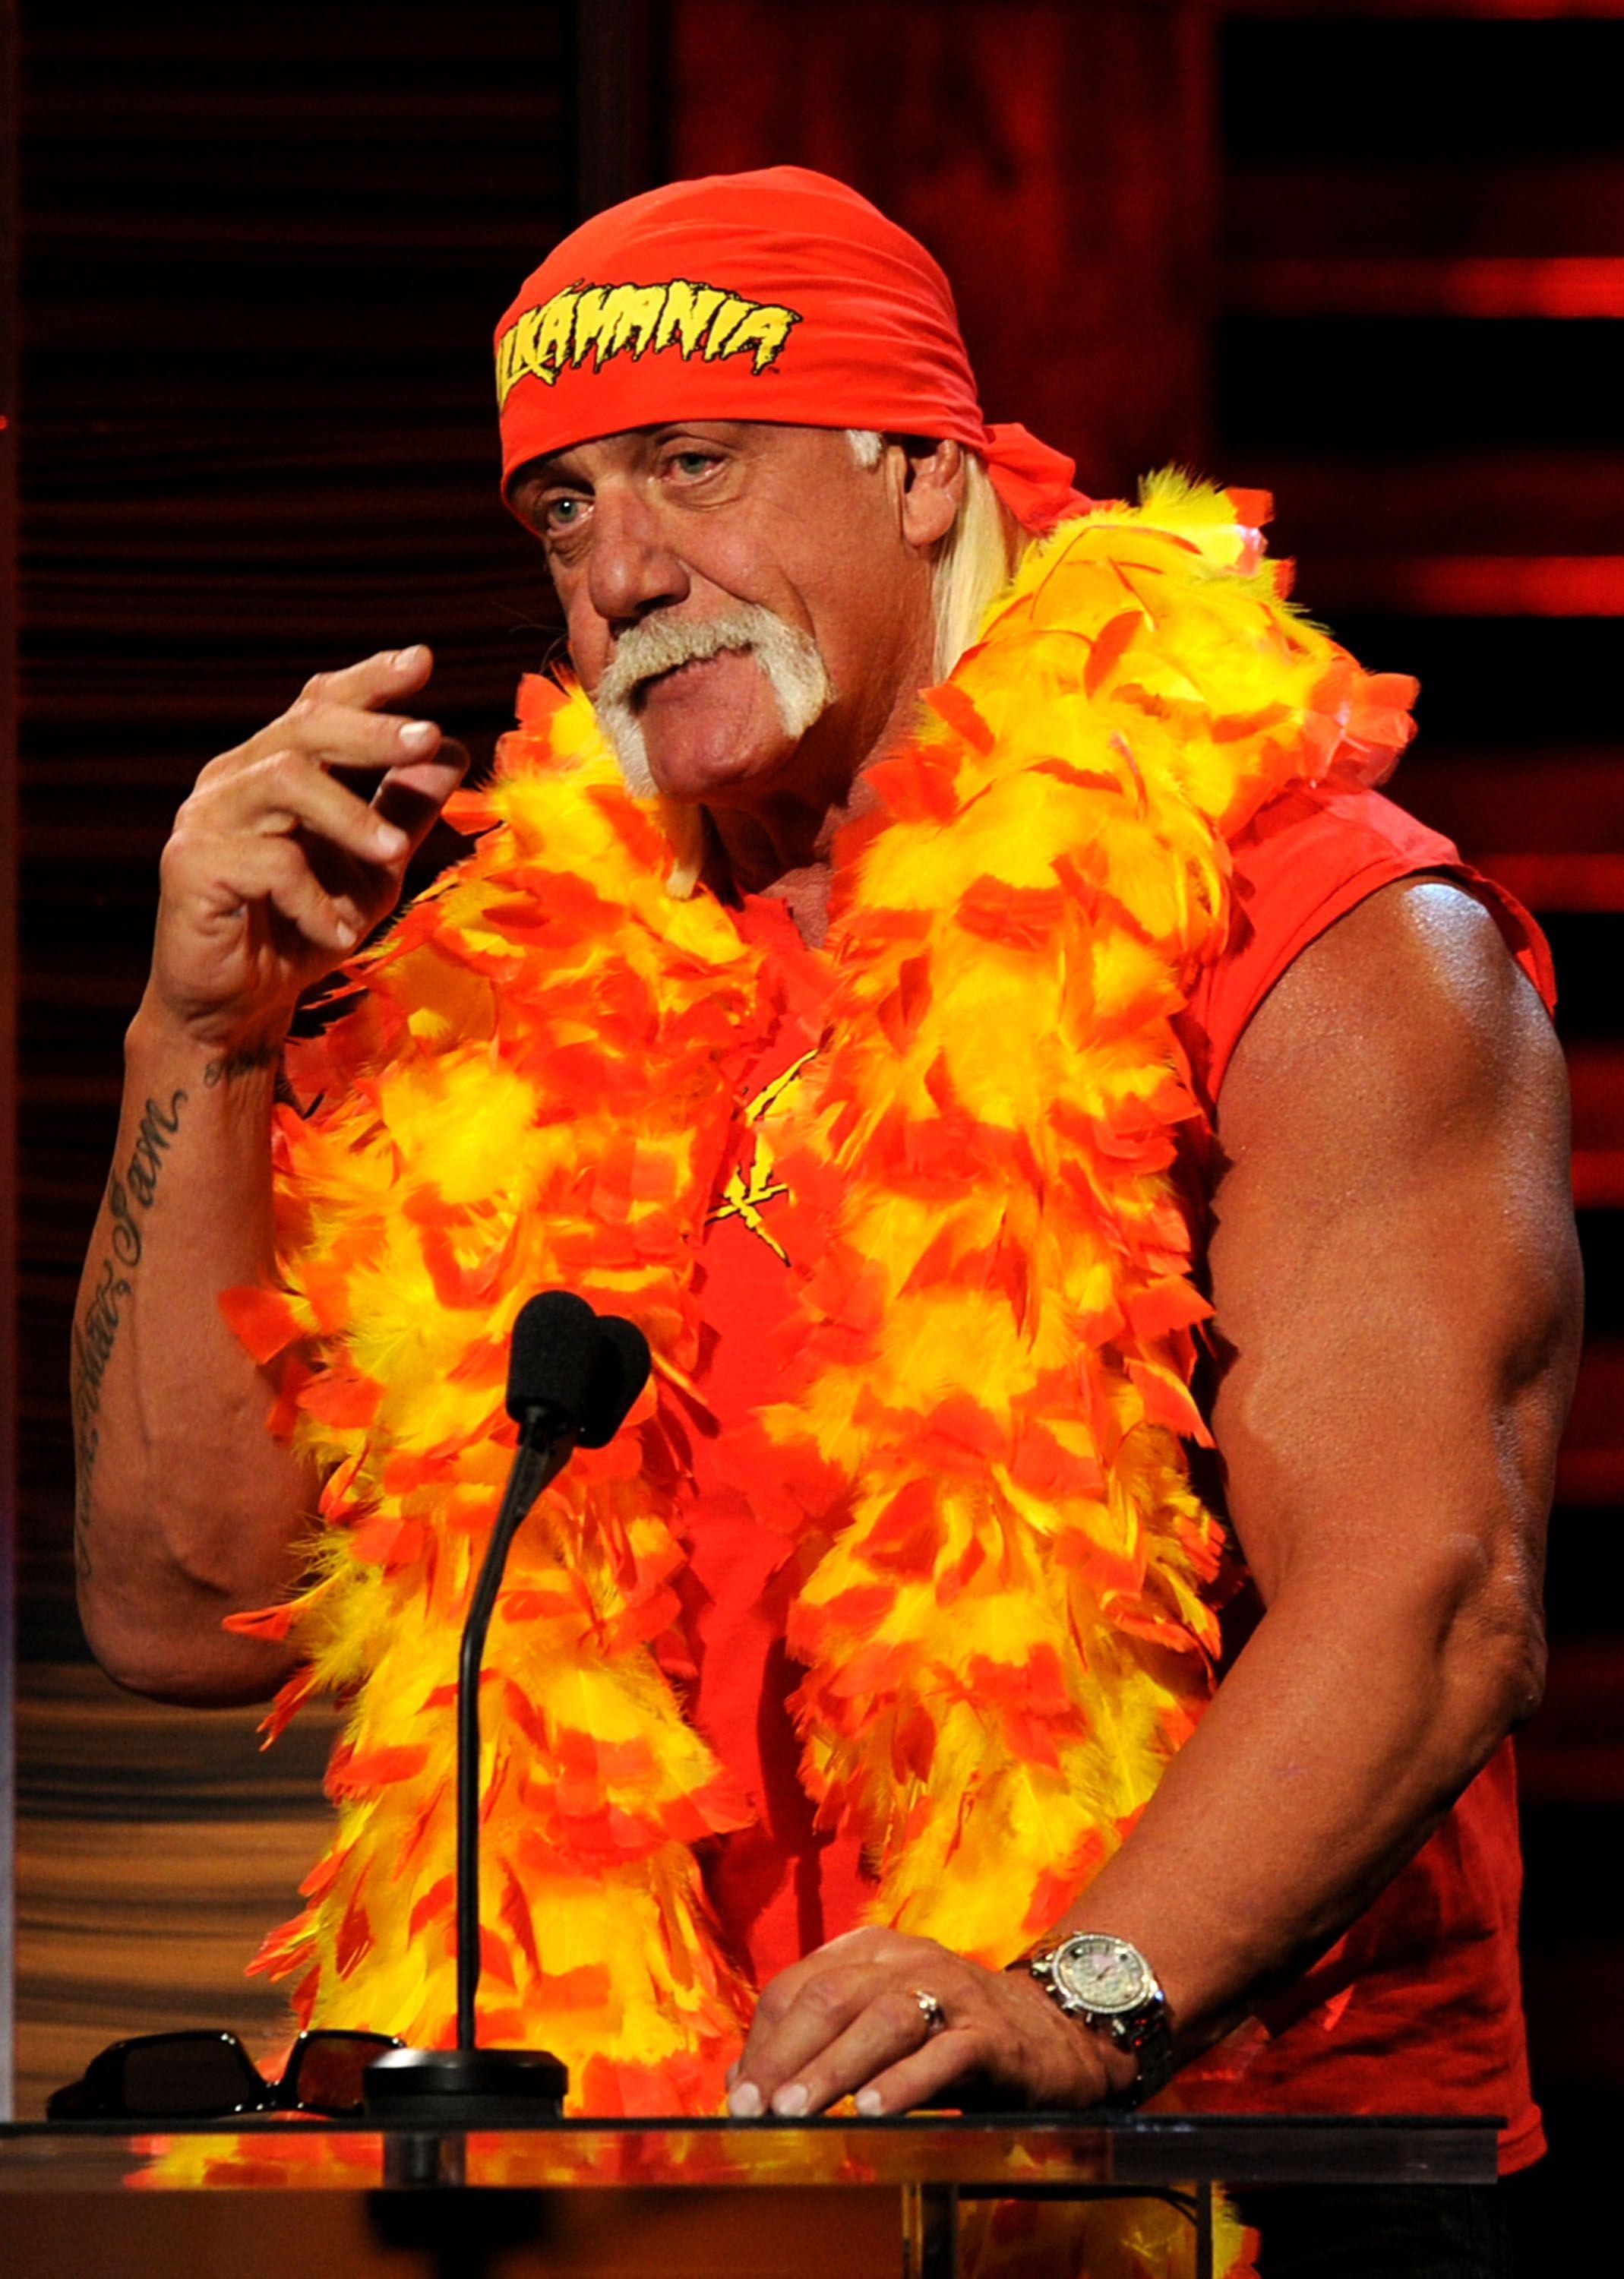 Iphone Hulk Hogan